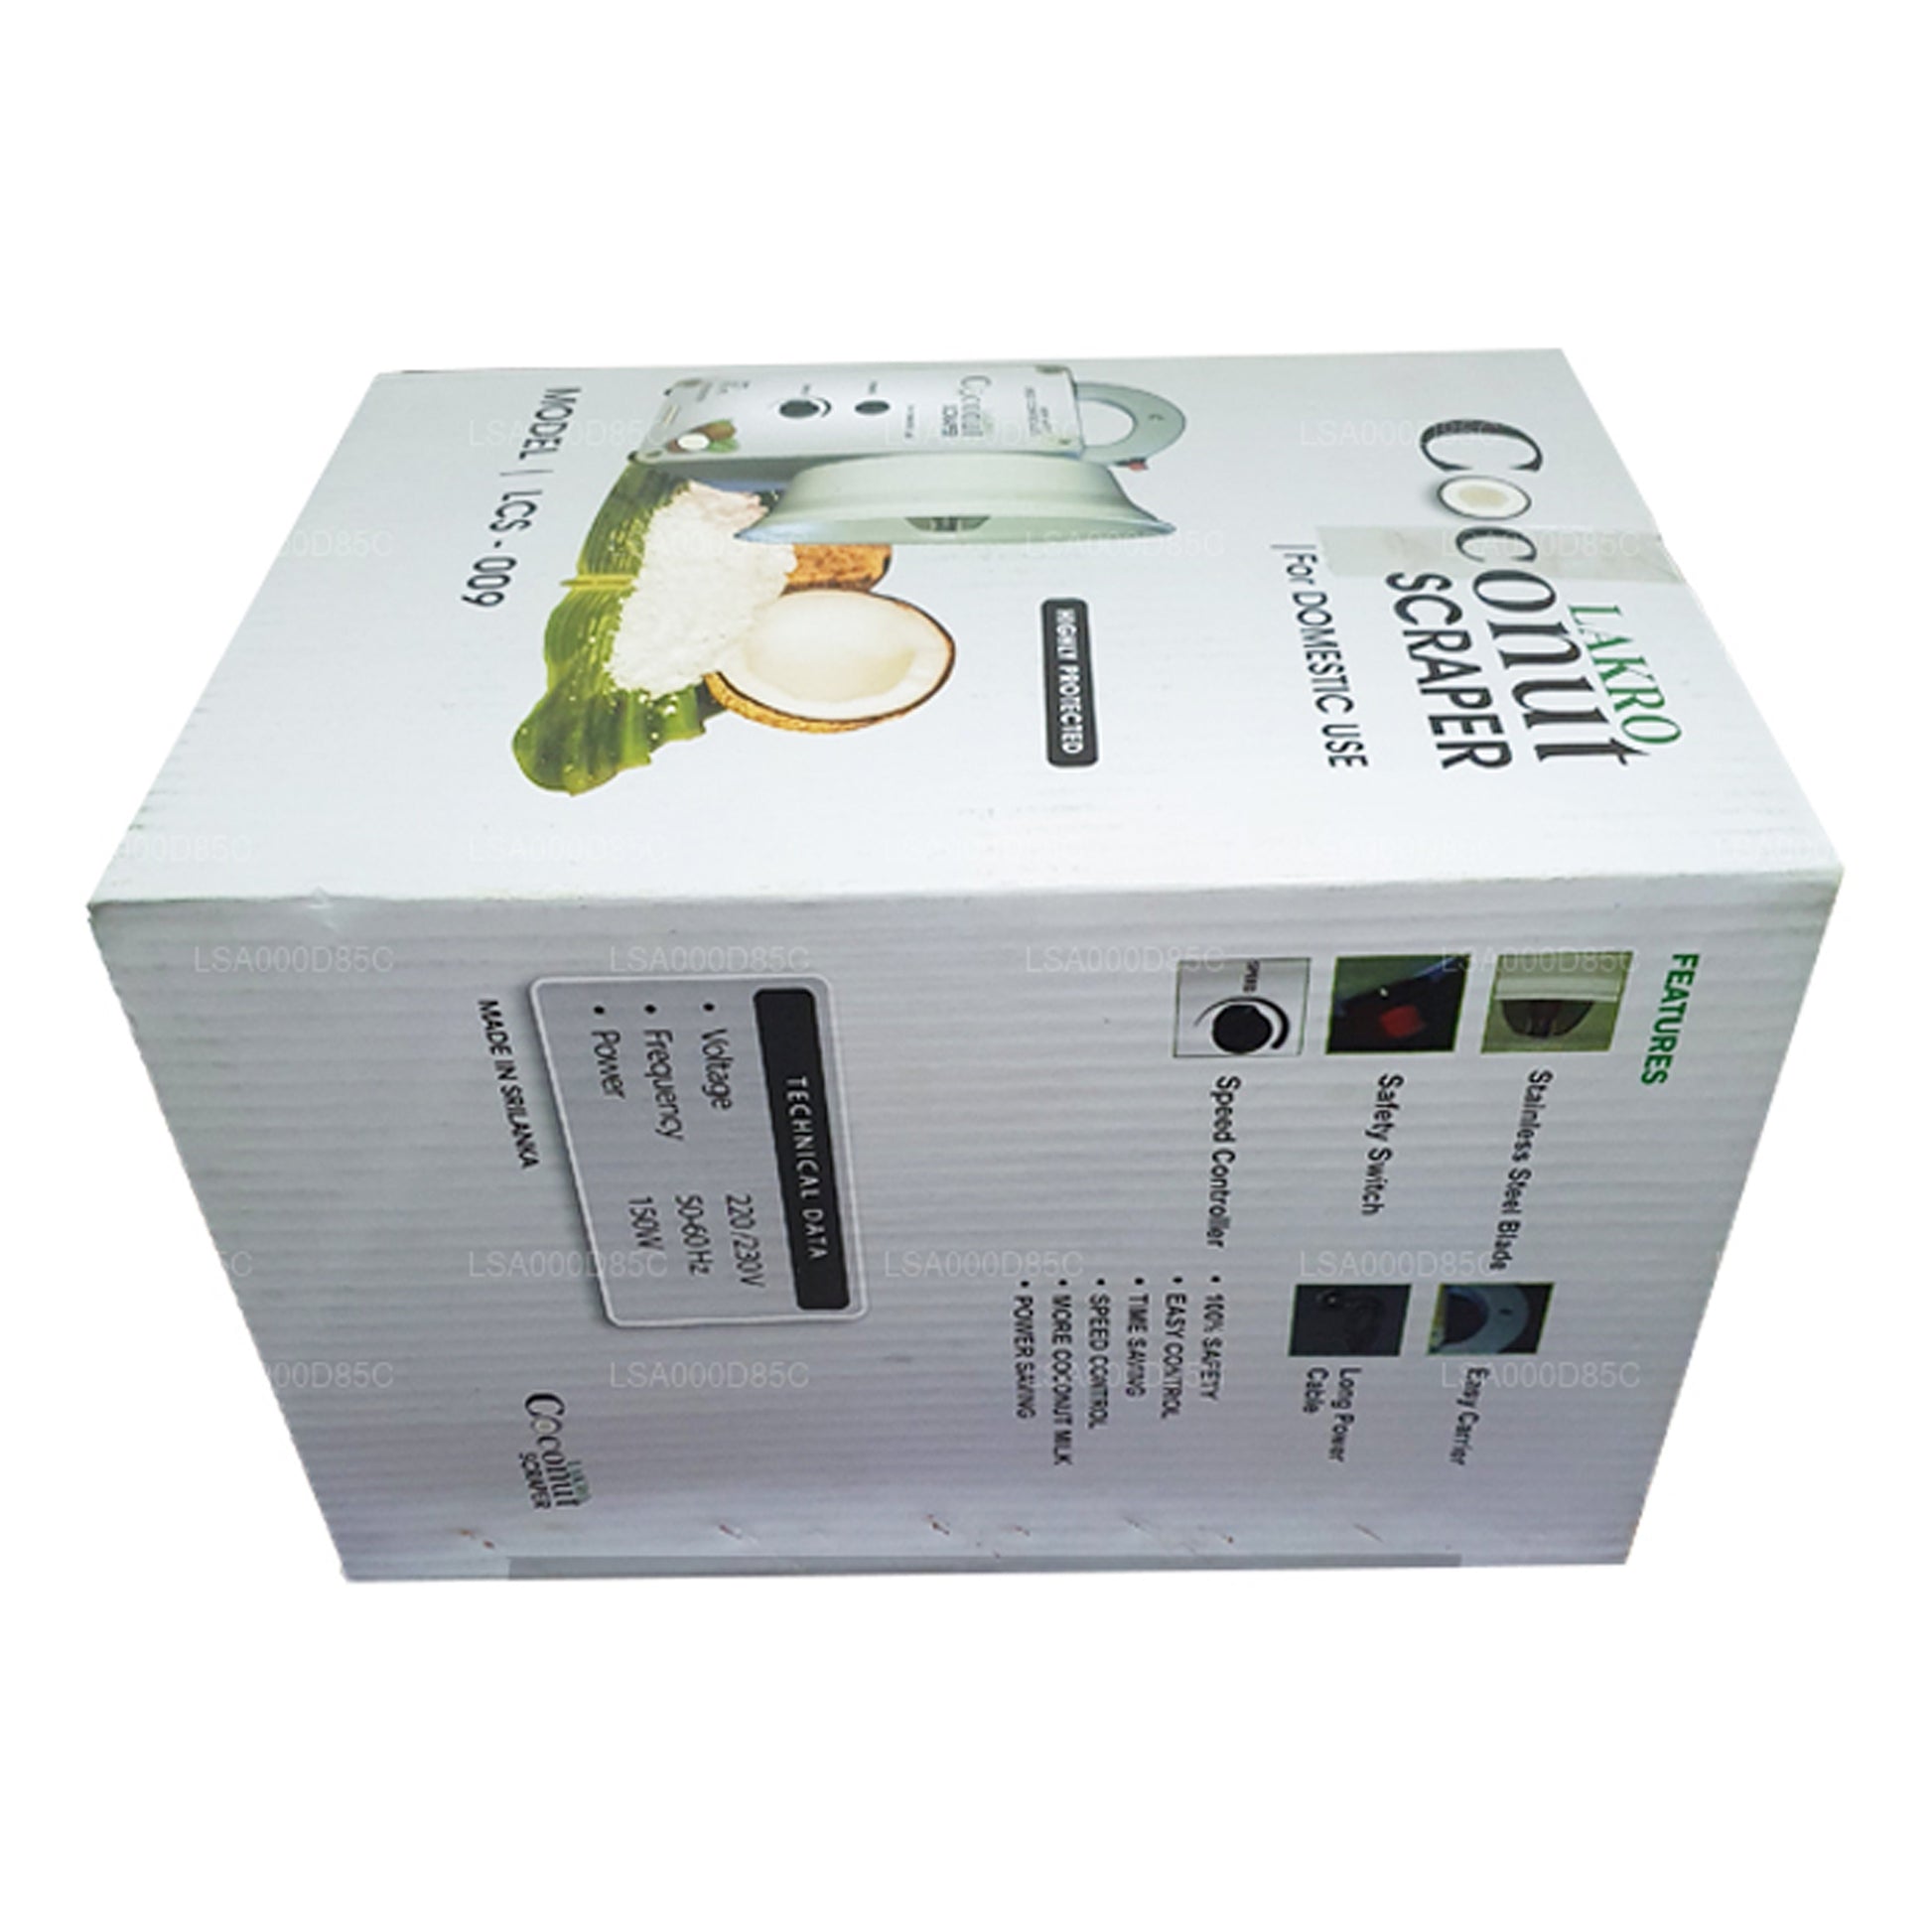  Lakro Domestic Electric Coconut Scraper (110v) Model LCS-009:  Home & Kitchen